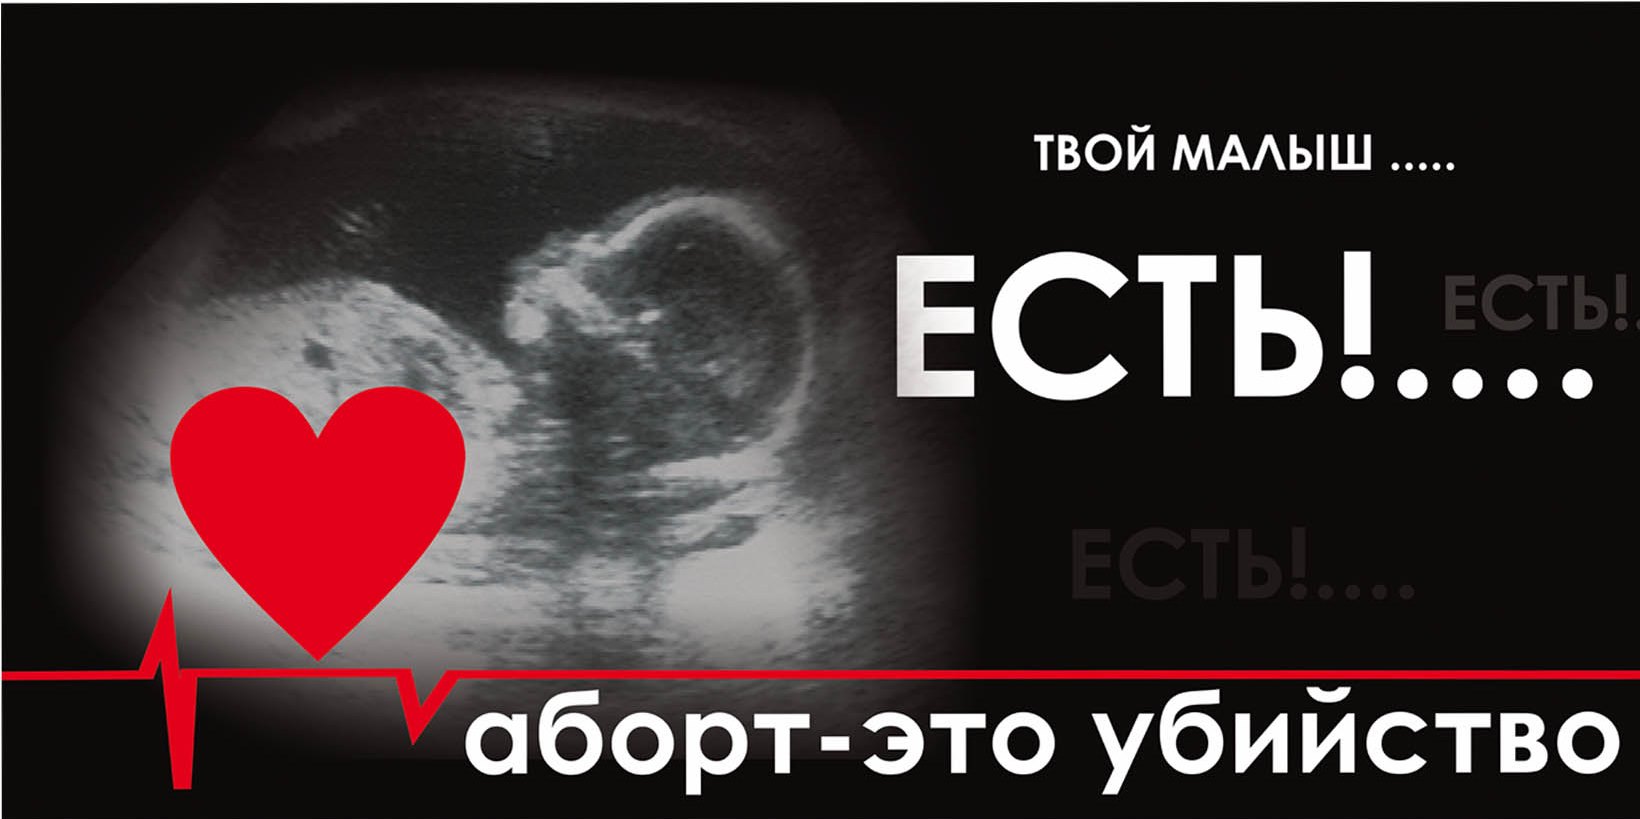 Прерывание беременности ел. Открытки против абортов. Социальная реклама аборт. Иллюстрации на тему аборта. Православные против абортов.